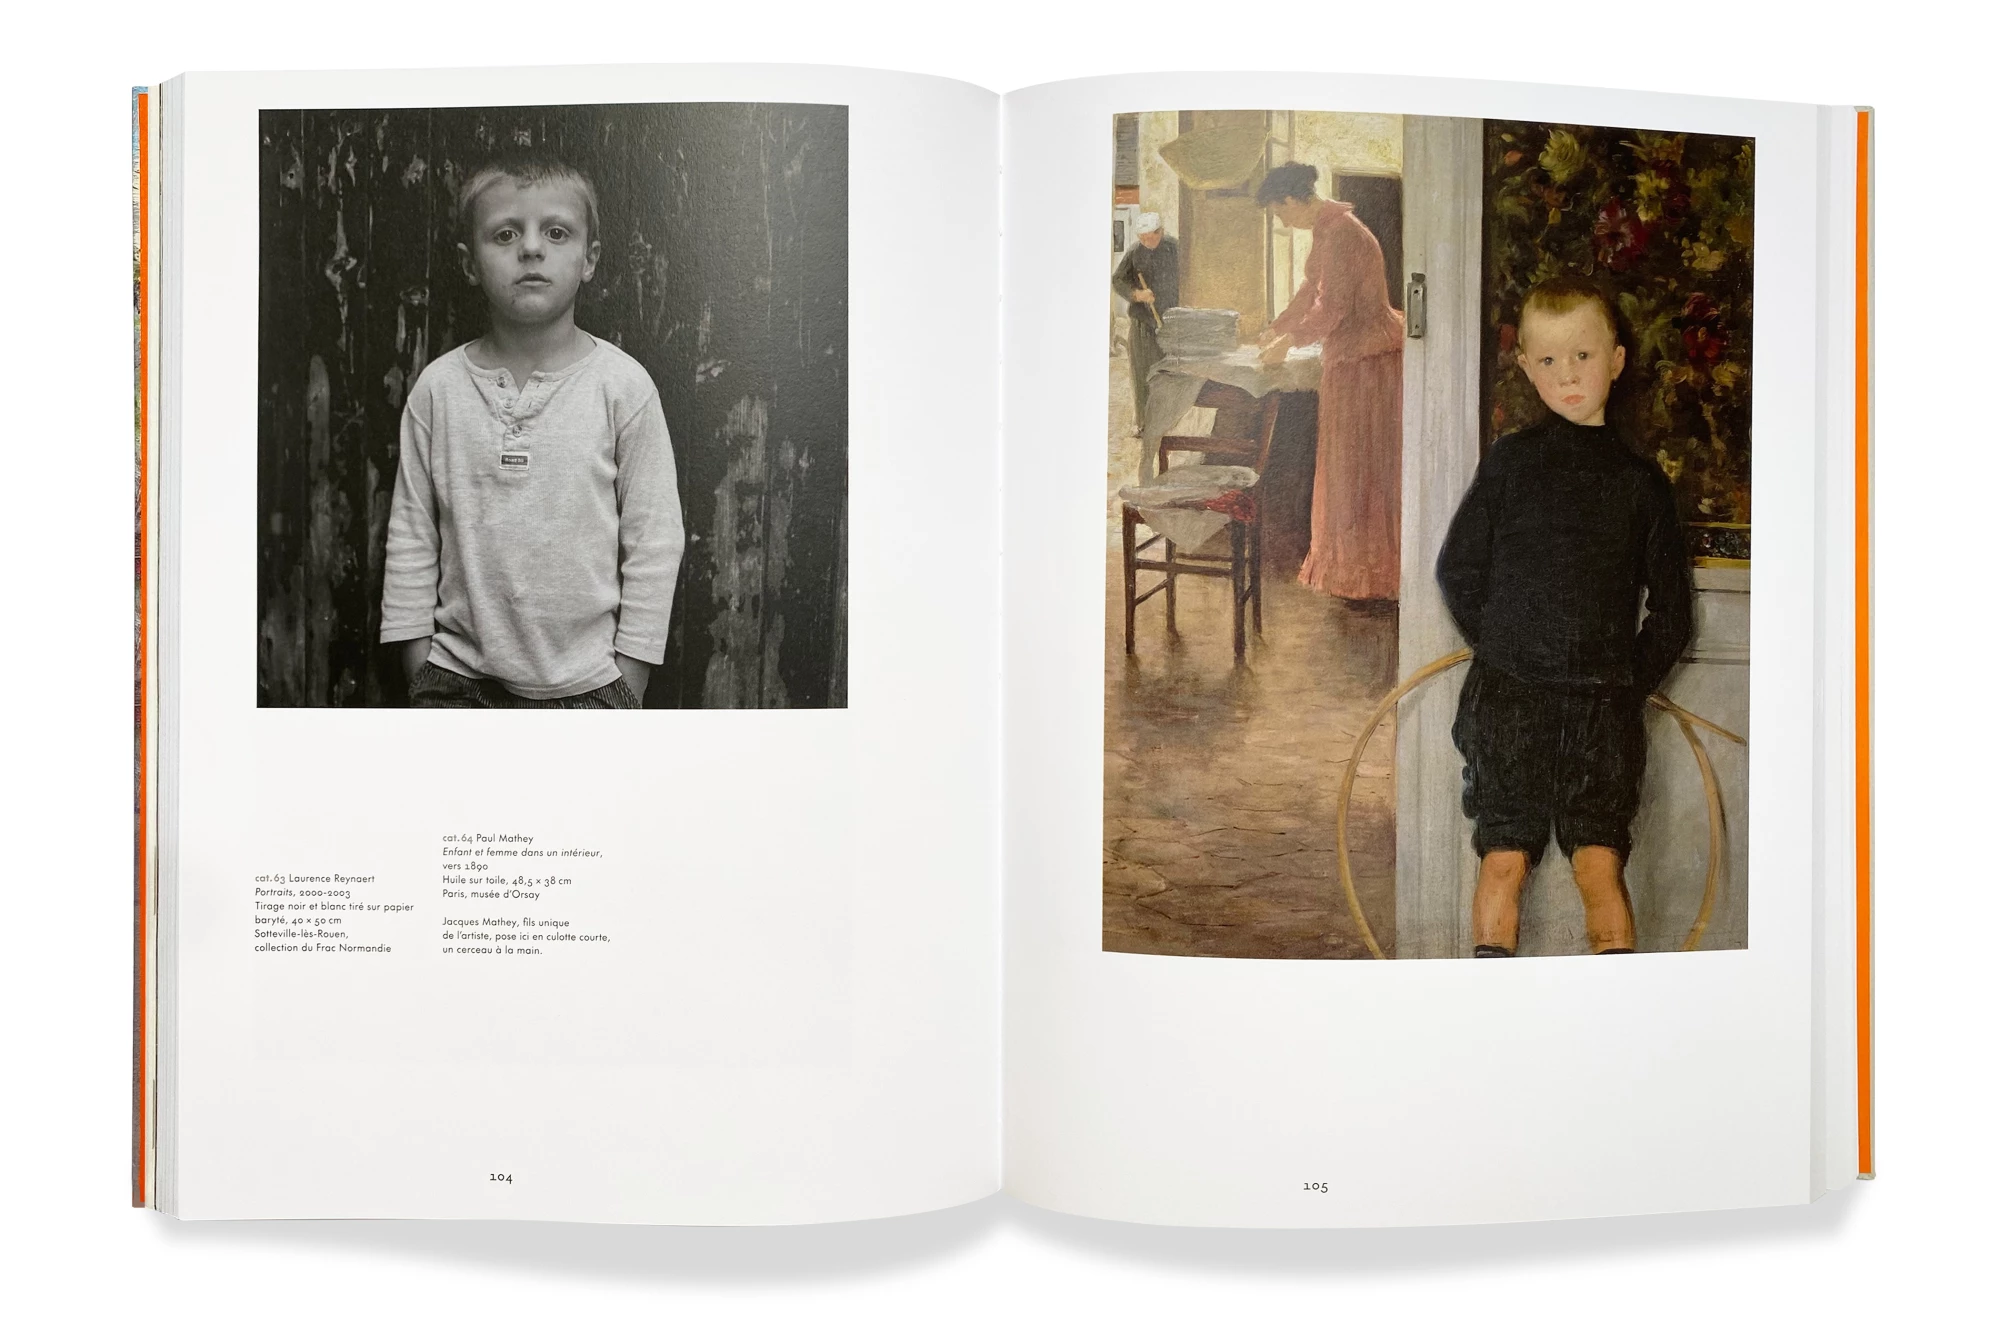 Léo Grunstein - Les enfants de l’Impressionnisme, Musée des Impressionnismes Giverny, Flammarion, Édition, 2023